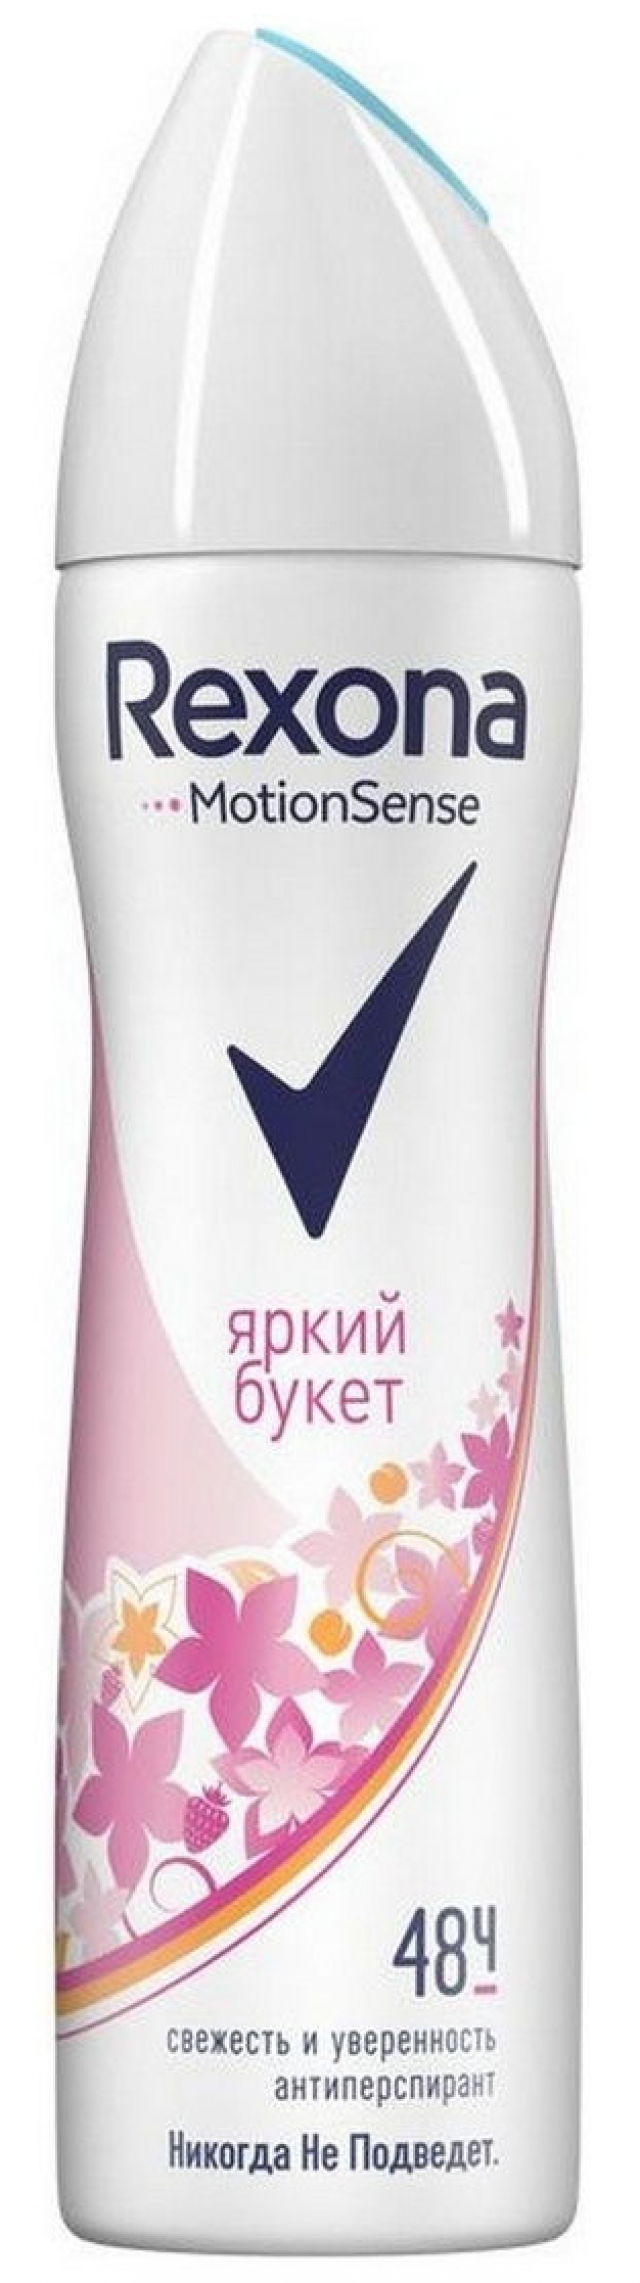 Рексона дезодорант-спрей Яркий букет 150мл купить в Москве по цене от 0 рублей